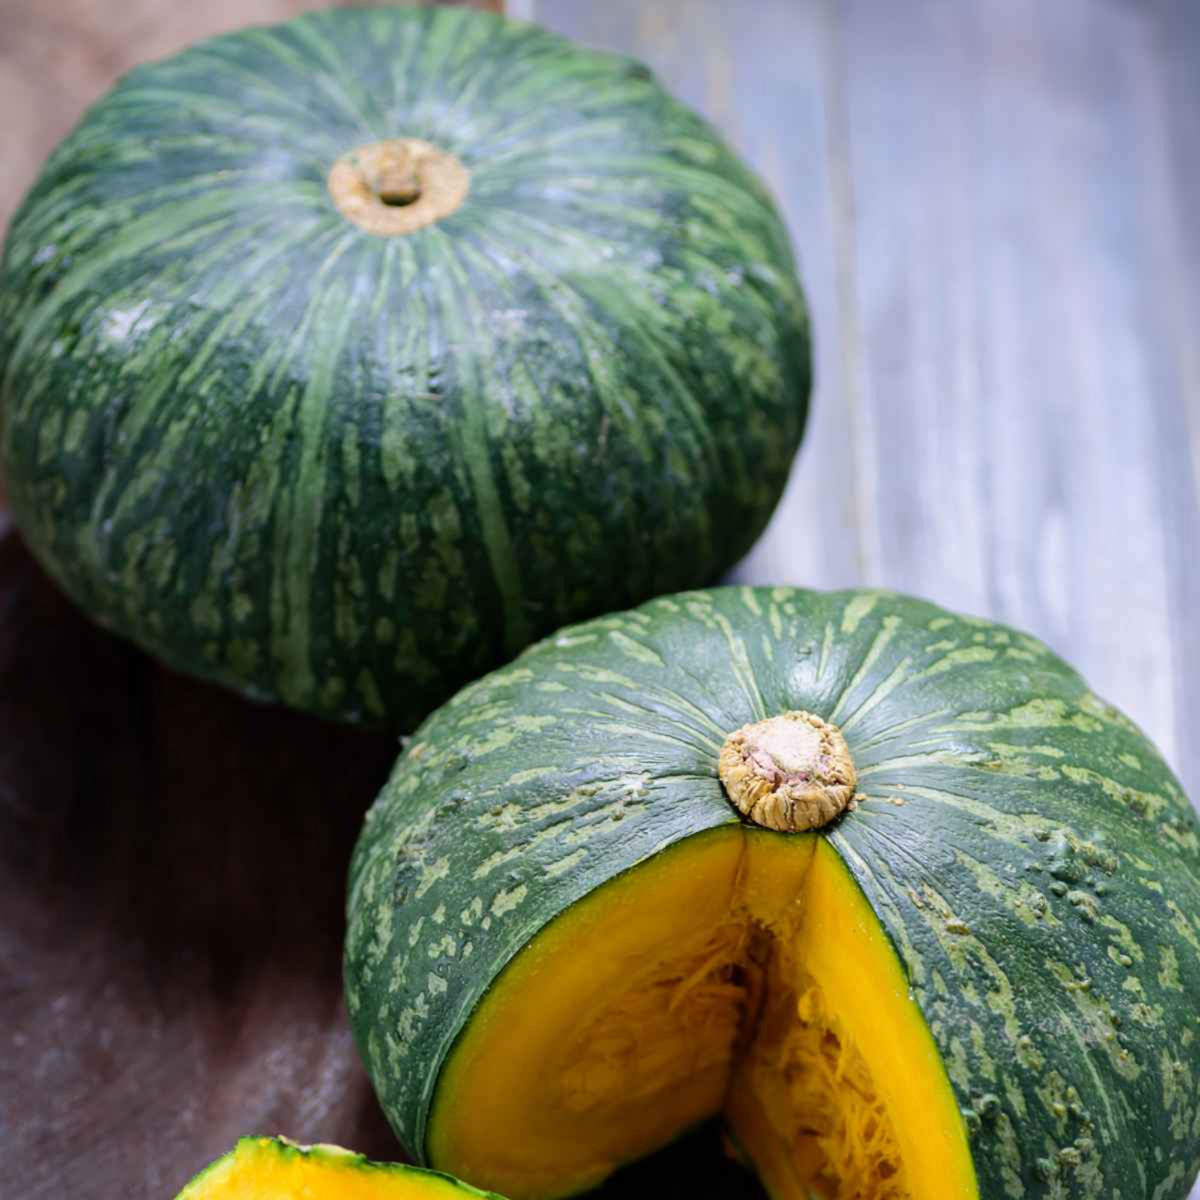 Green Pumpkin/500 Grams